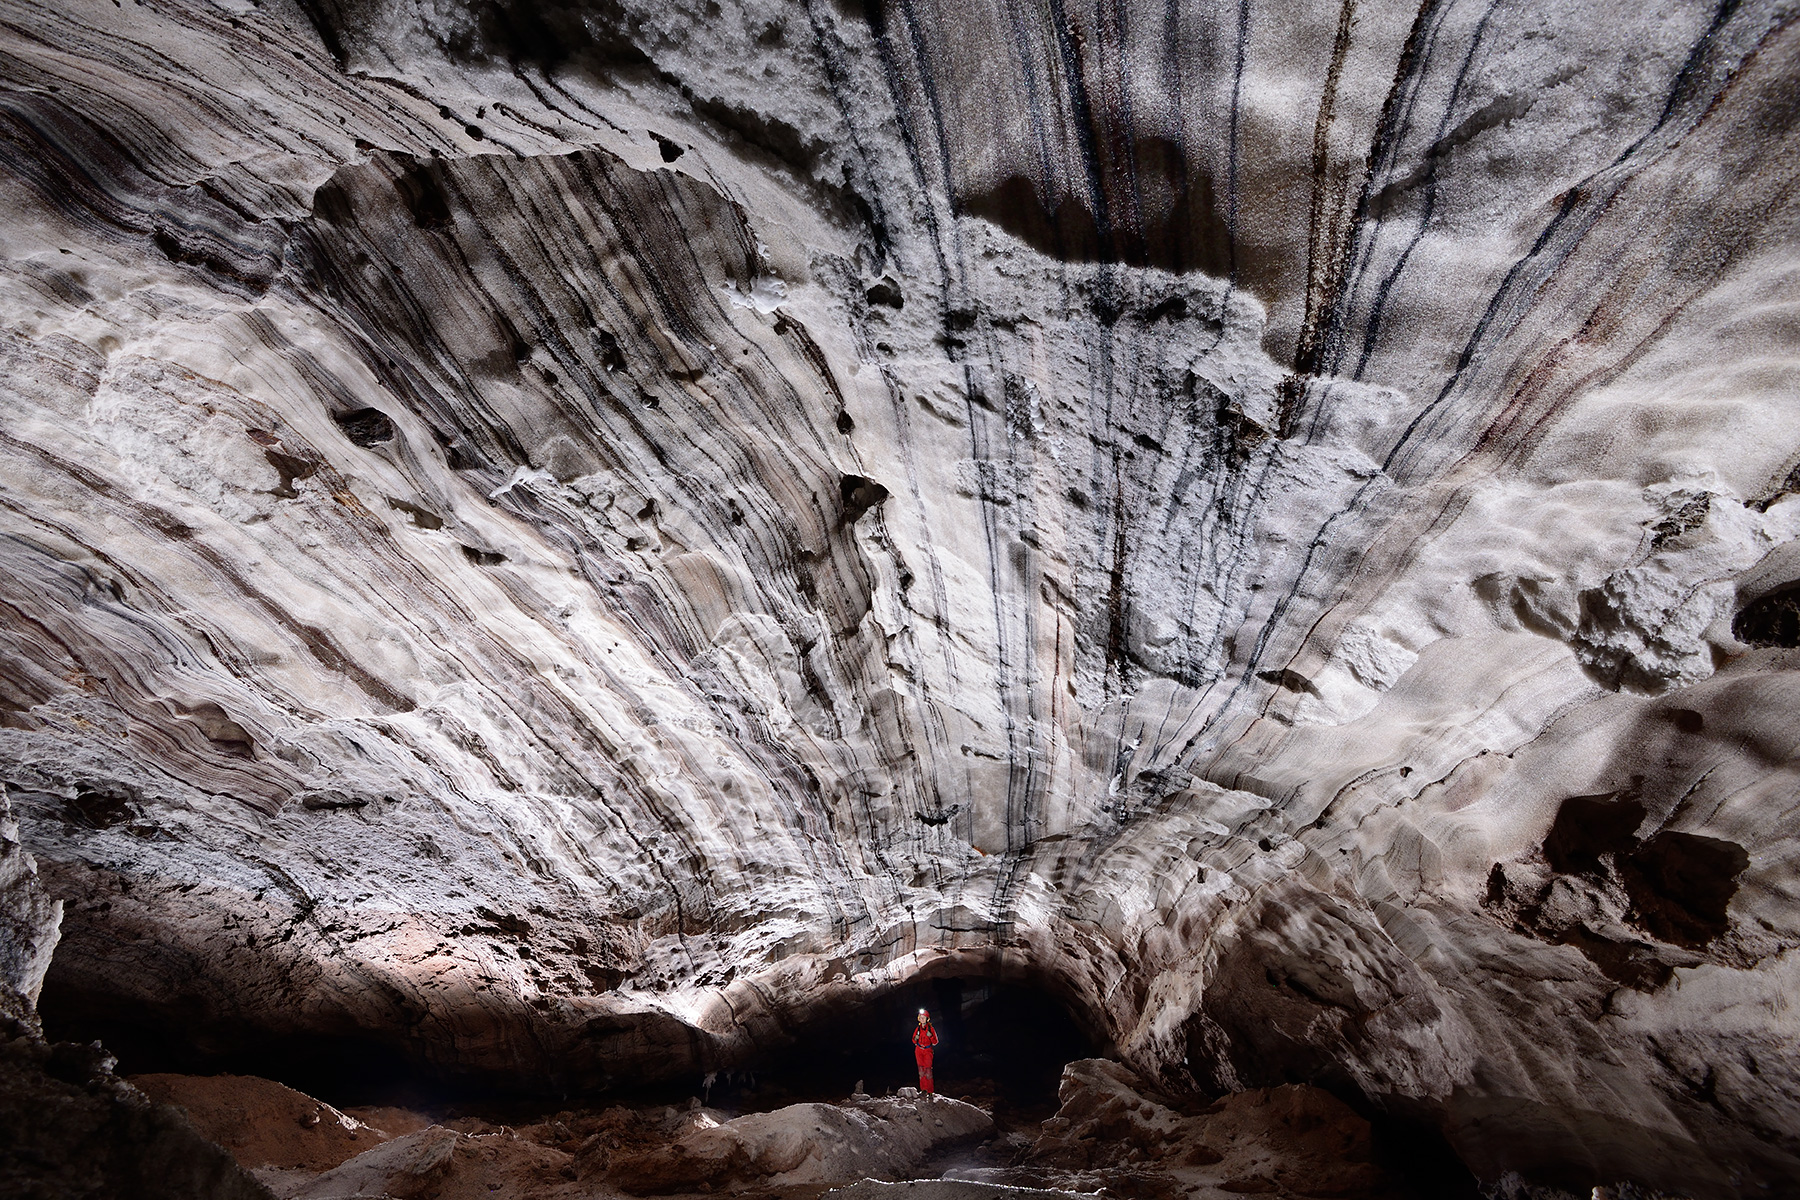 3N Cave (Iran, île de Qeshm, diapir de sel de Namakdan) - Entrée supérieure : grande salle avec couches de sel verticales au plafond